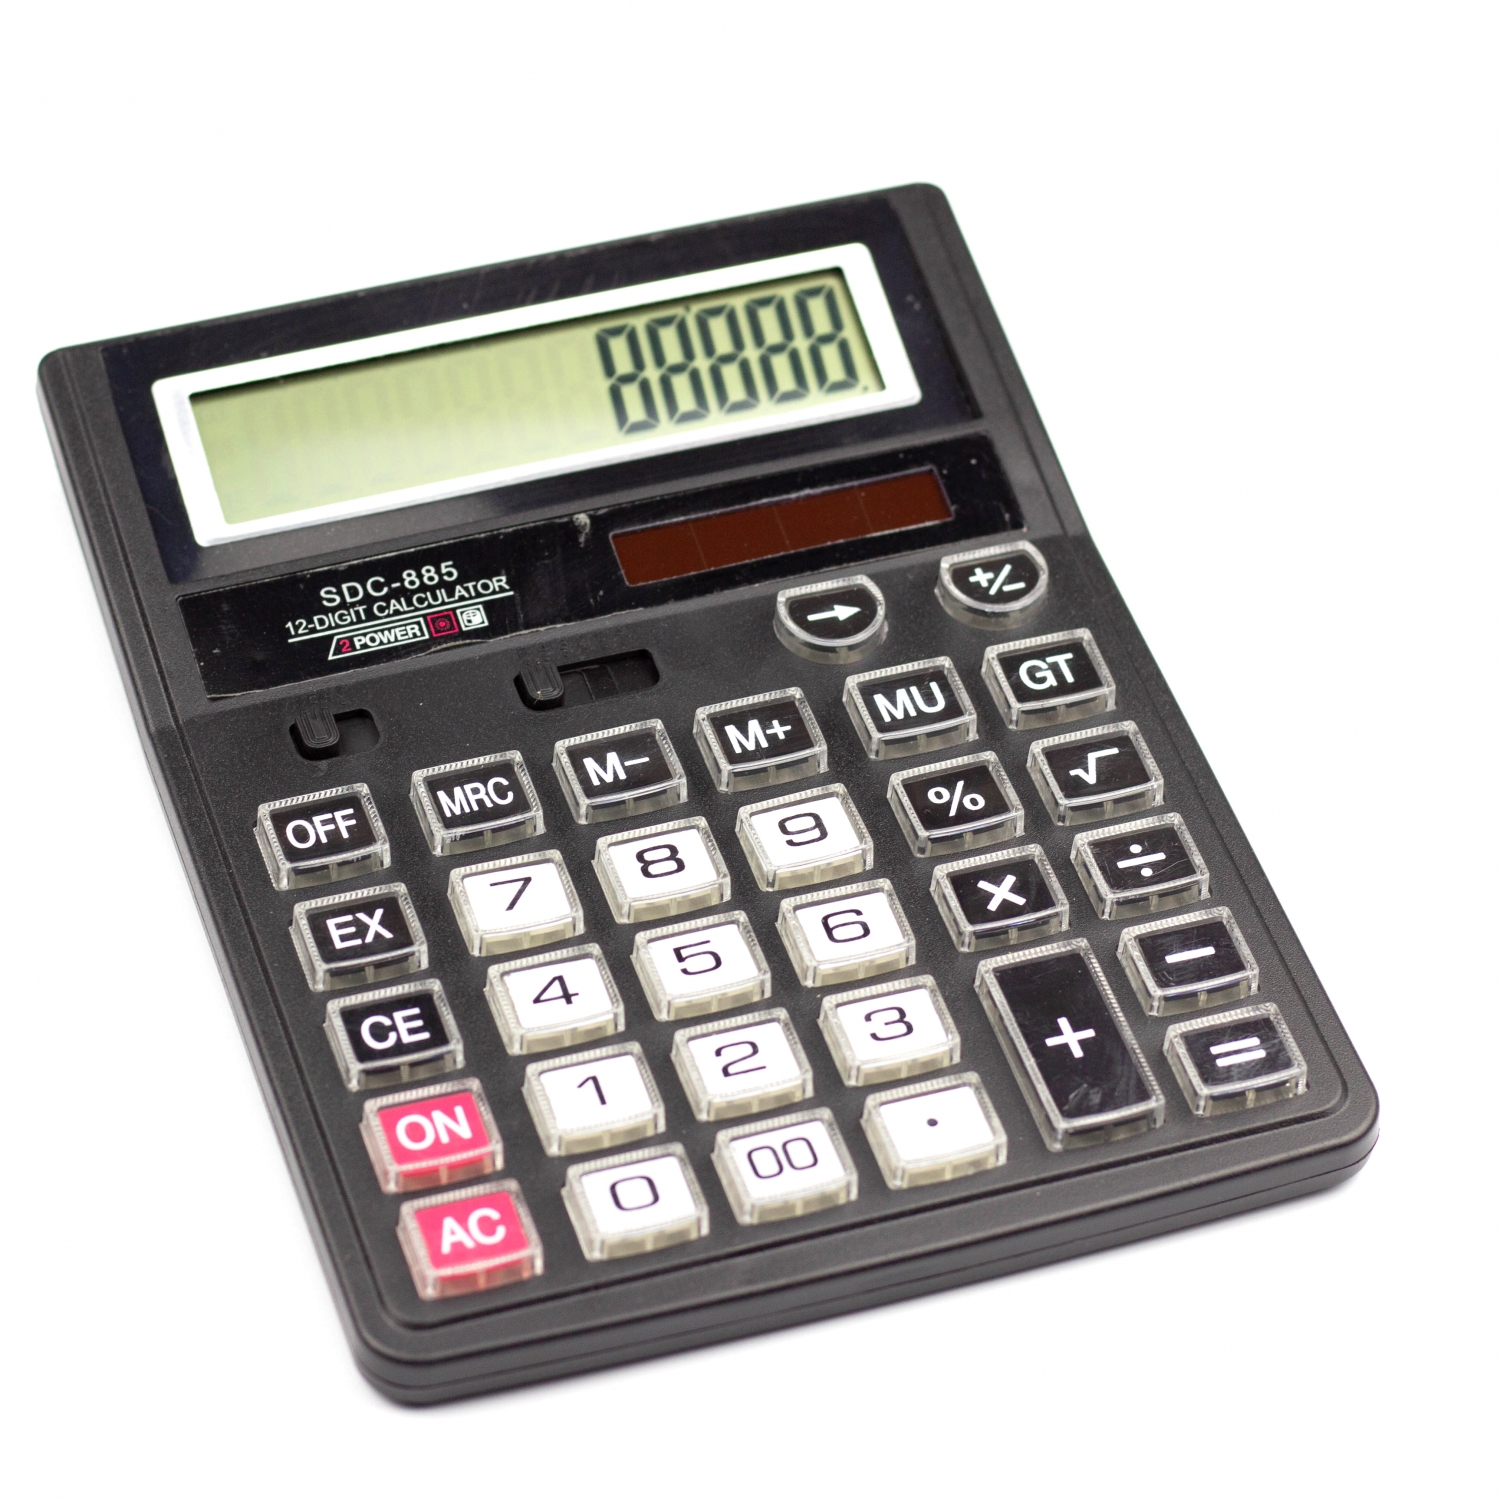 Калькулятор SDC-885 в коробке 12 разрядный AL6350 - Пермь 